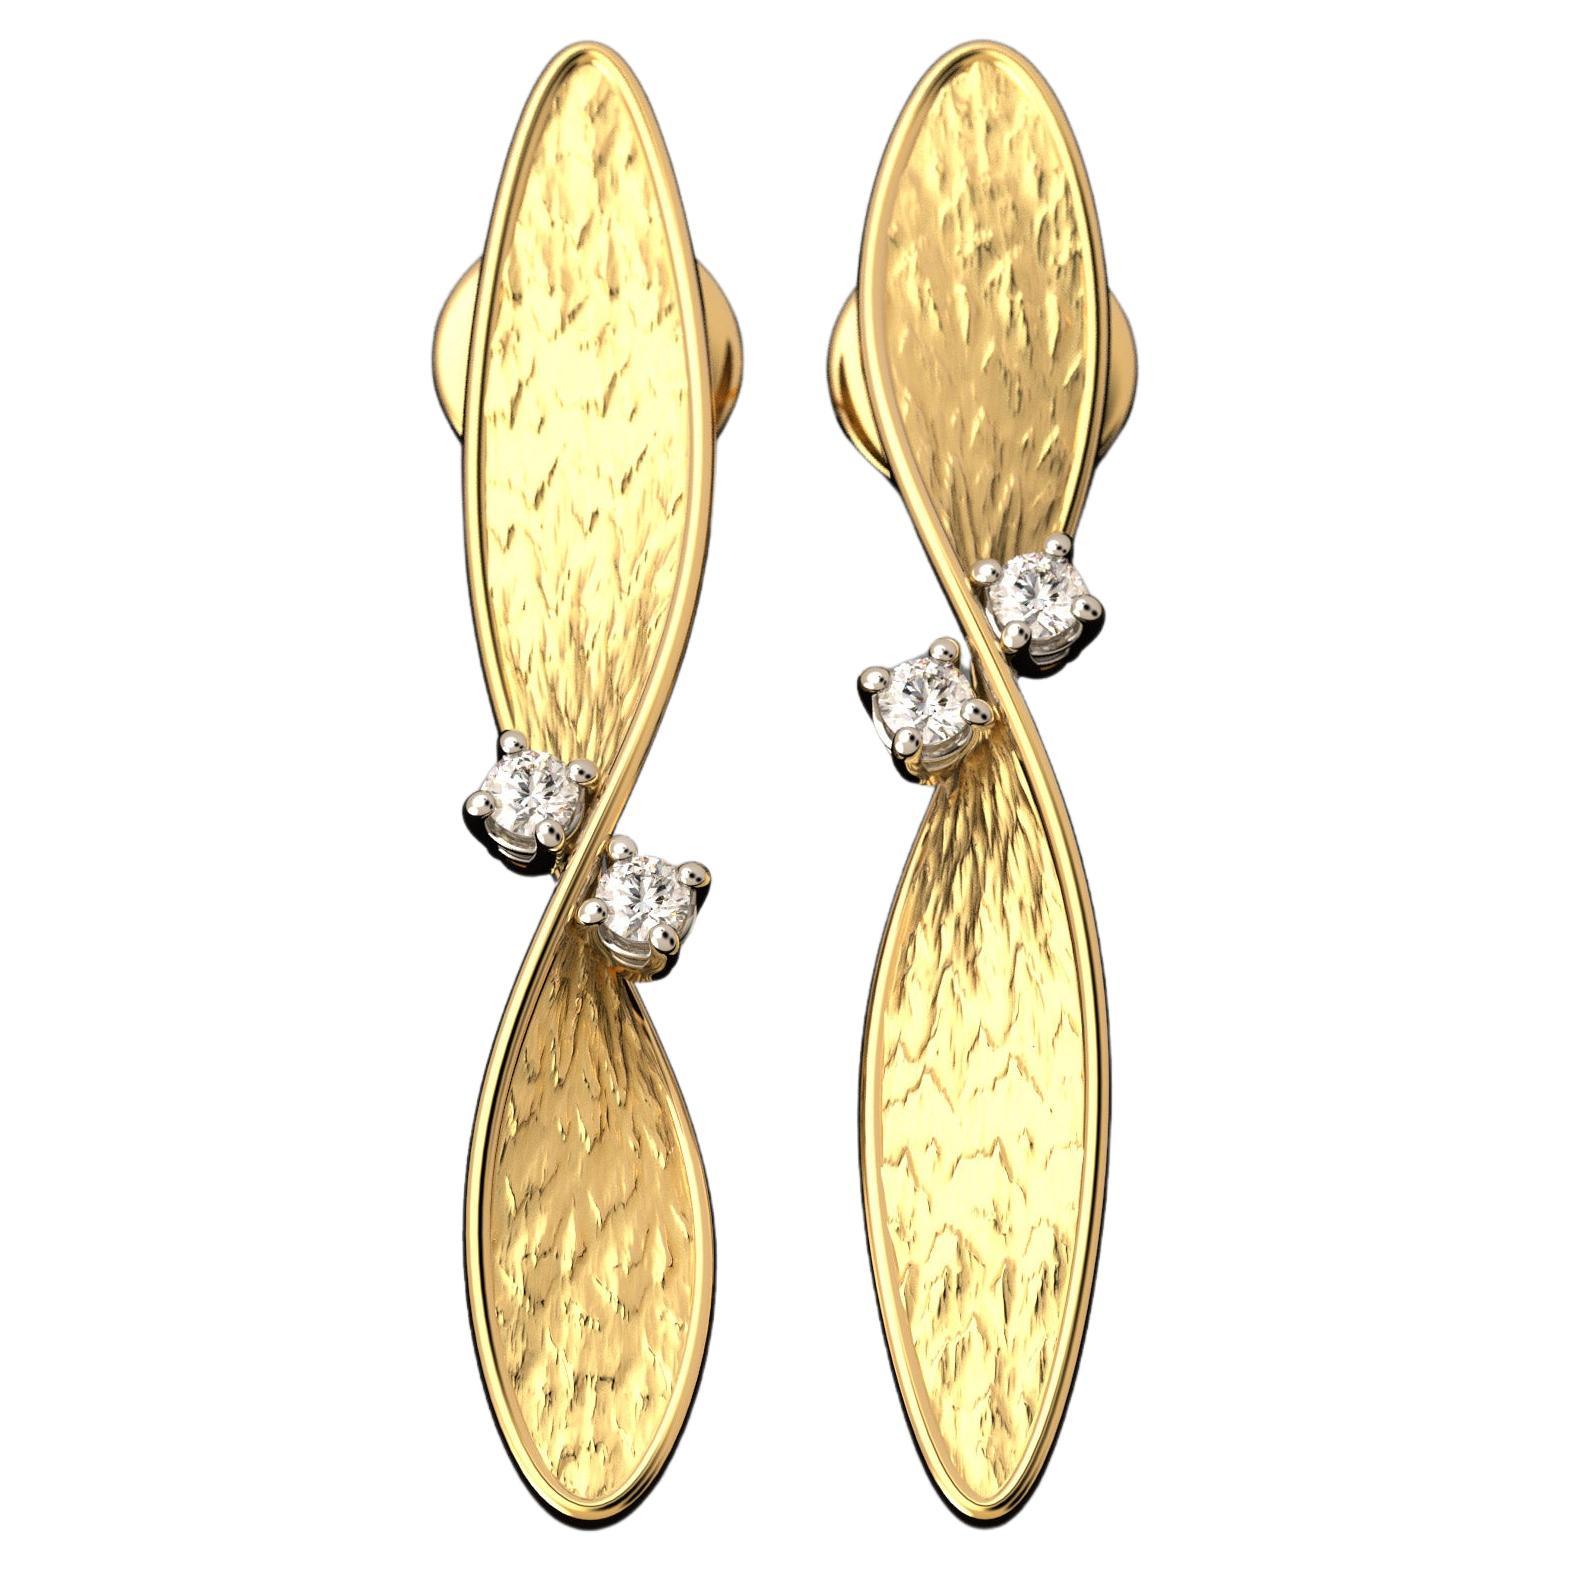 Boucles d'oreilles en or 18 carats et diamants fabriquées en Italie par Oltremare Gioielli, Italian Jewelry.